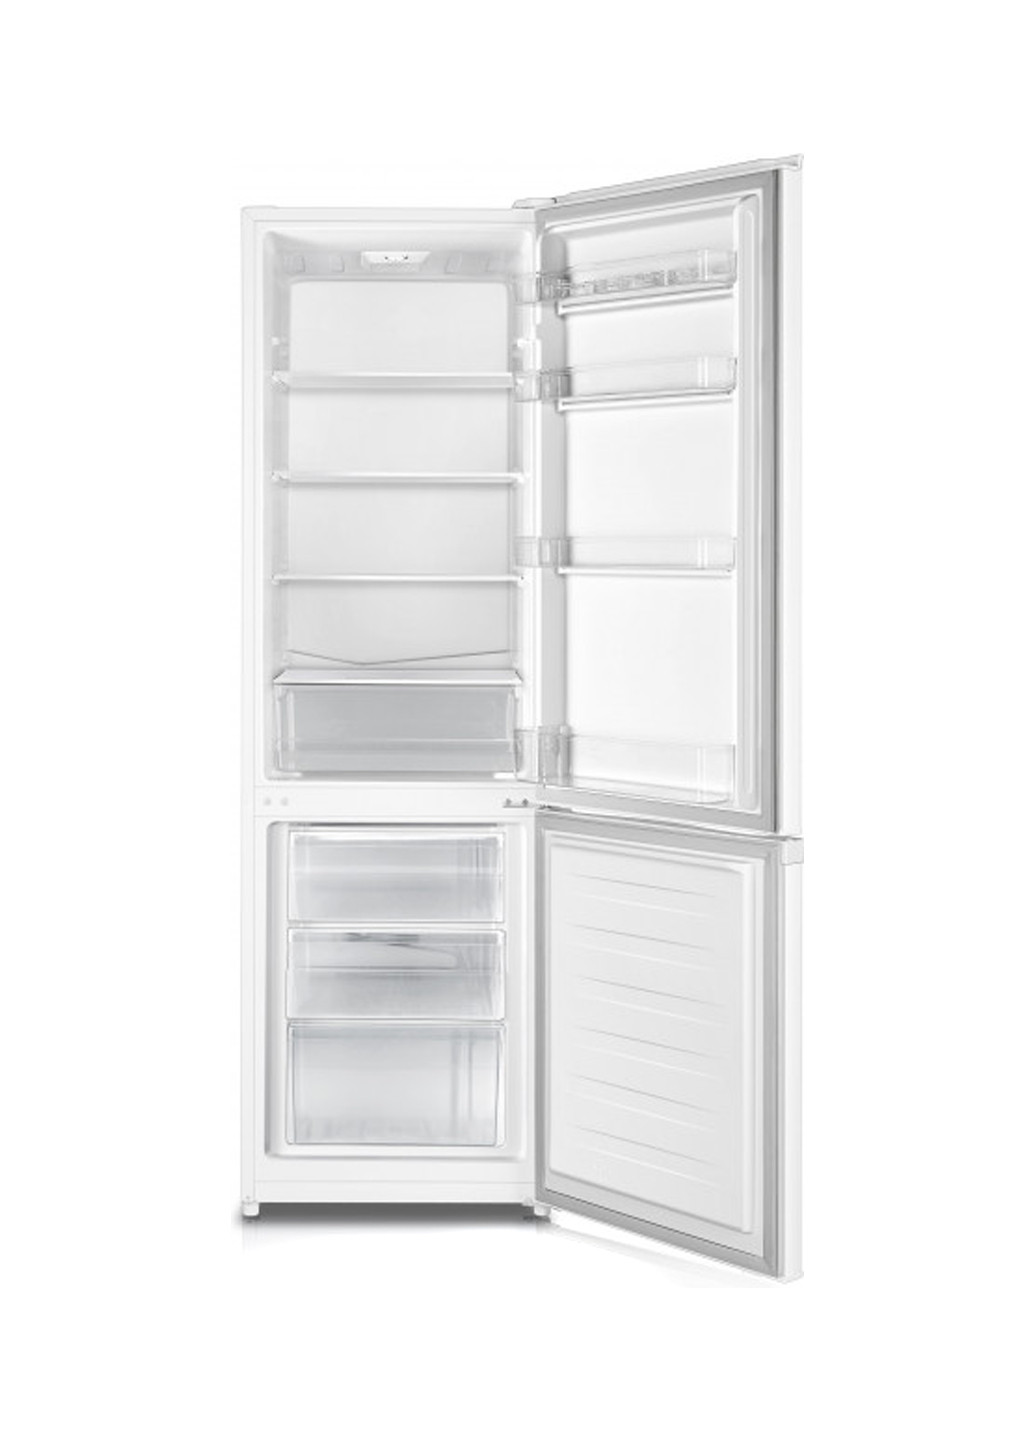 Холодильник RD-35DC4SUA / CPA1 Hisense rd-35dc4sua/cpa1 (130569668)